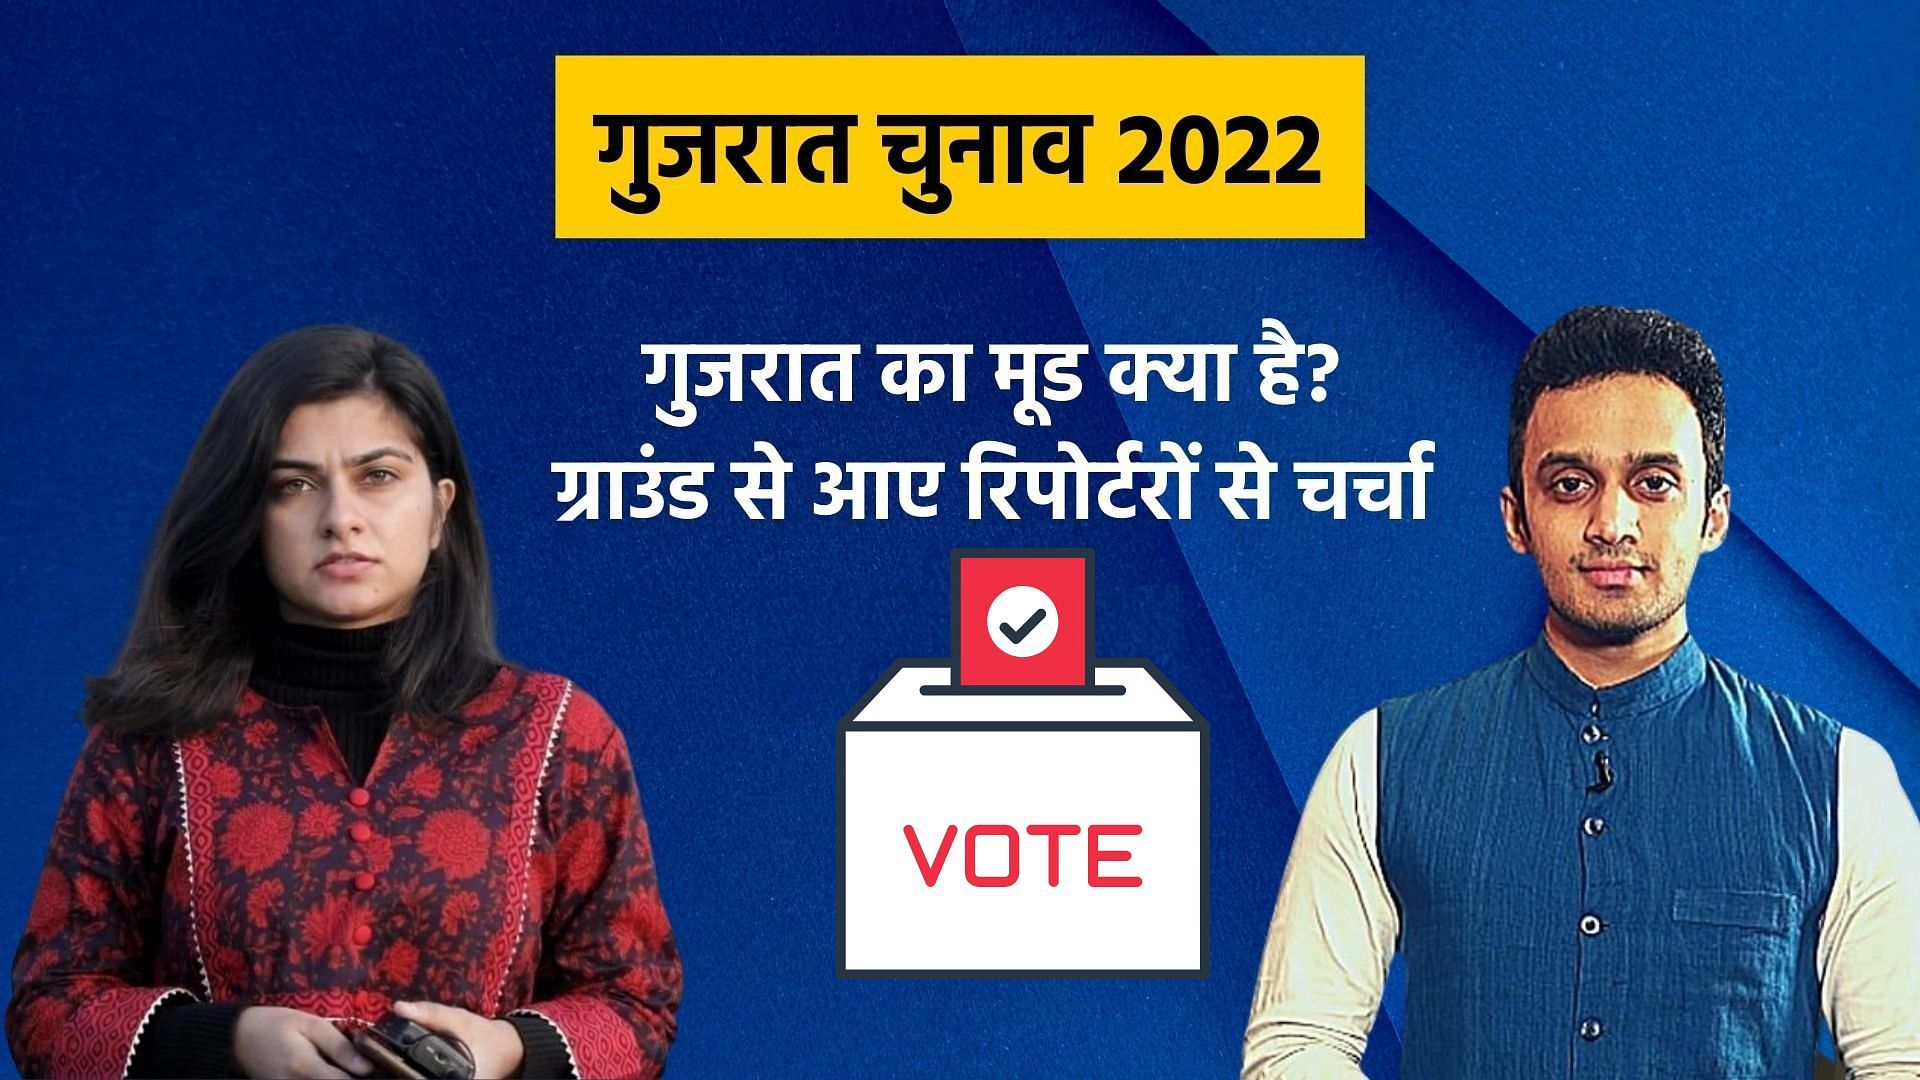 <div class="paragraphs"><p>Gujarat Election 2022</p></div>